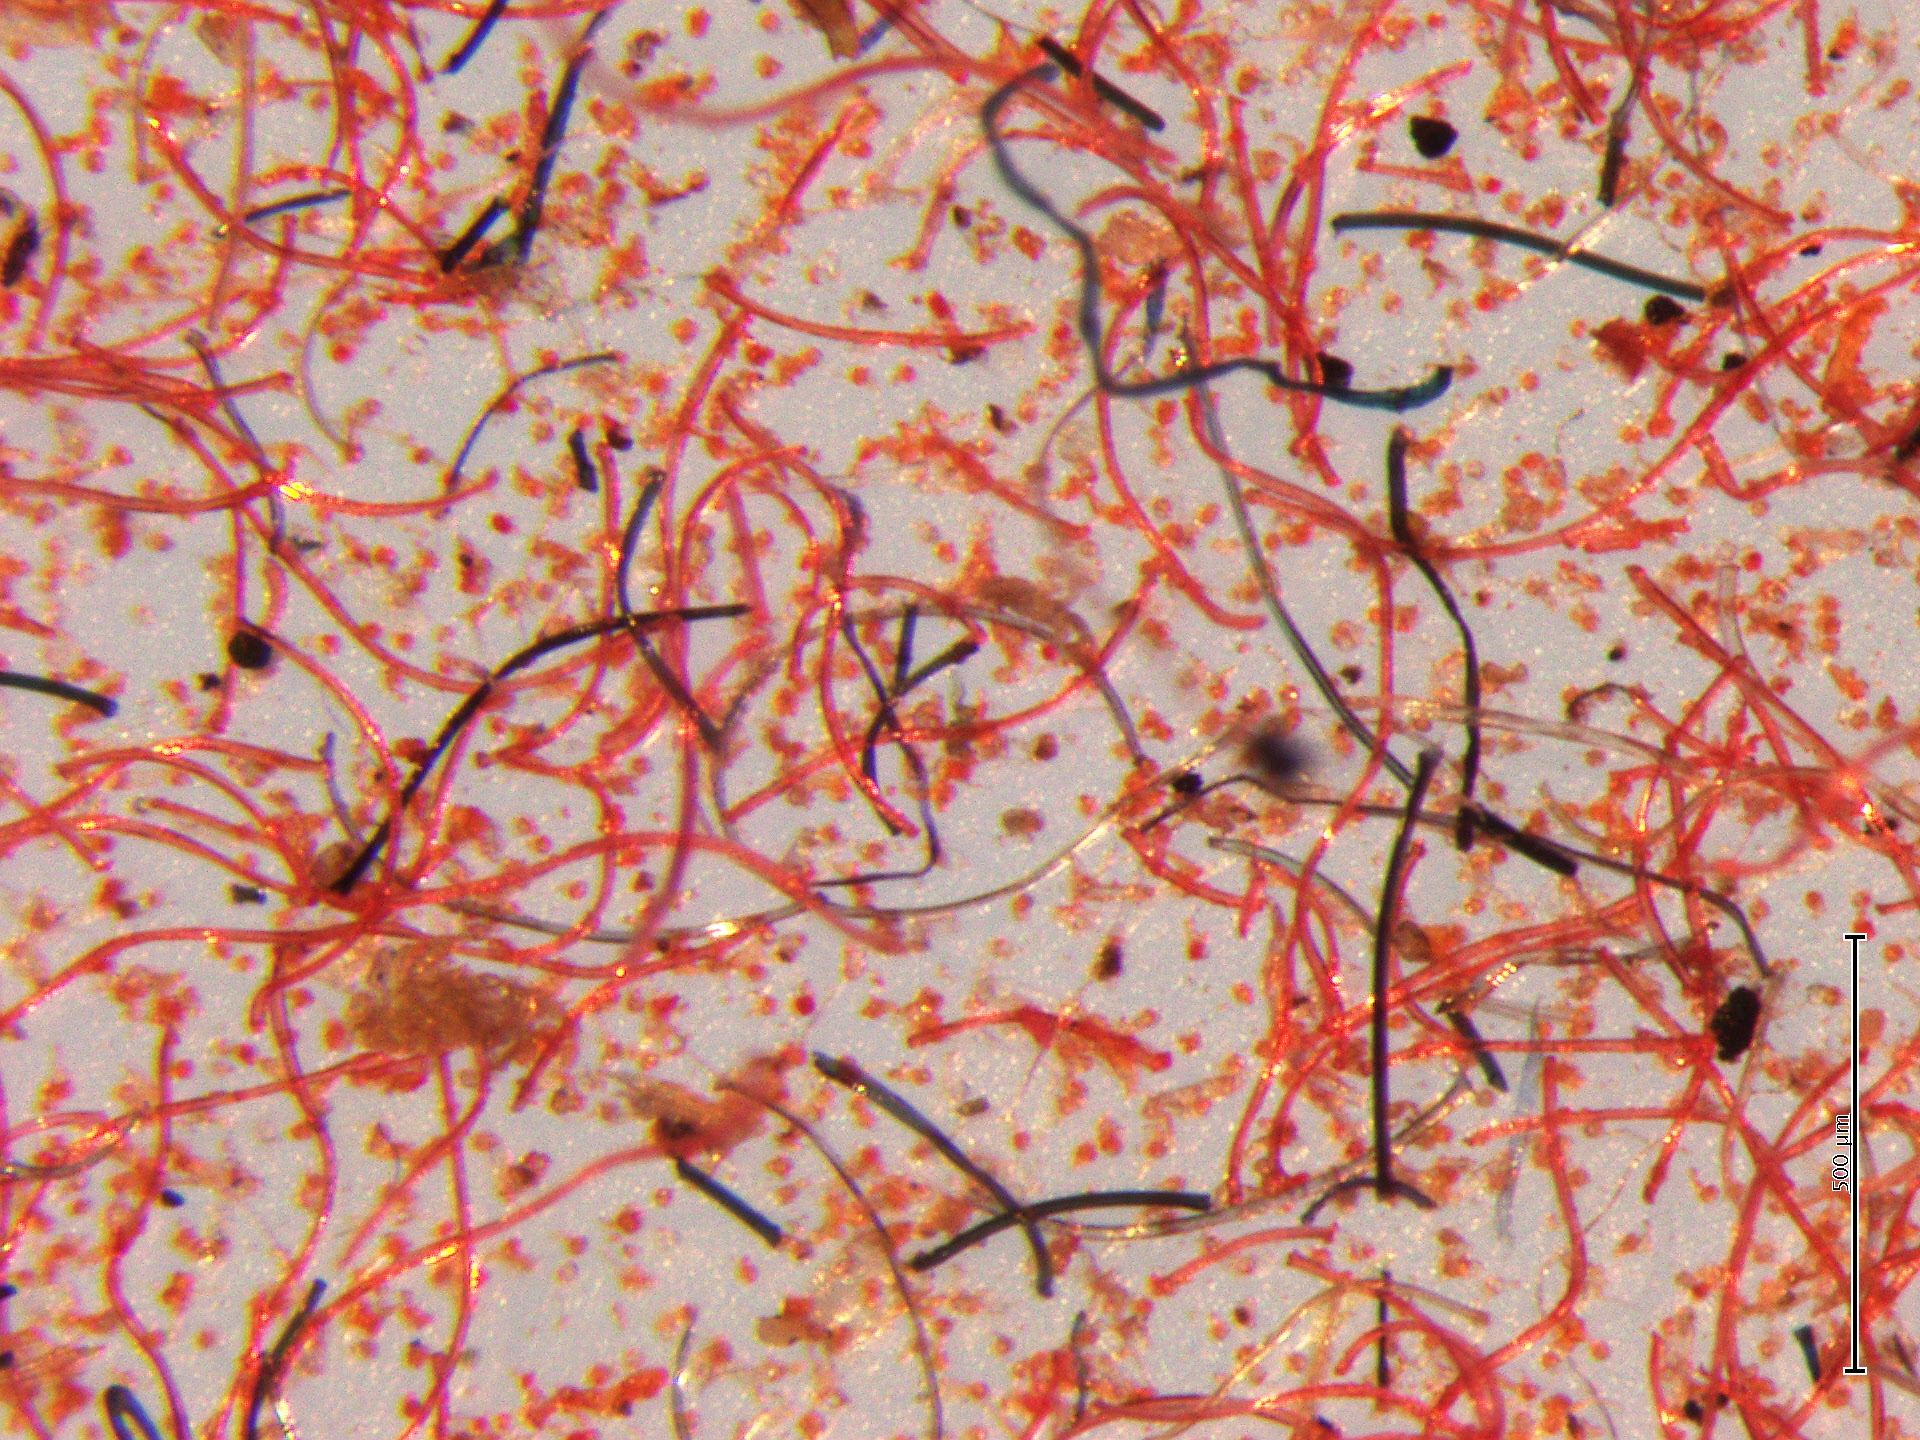 Les lessives libèrent des milliards de microfibres de plastique